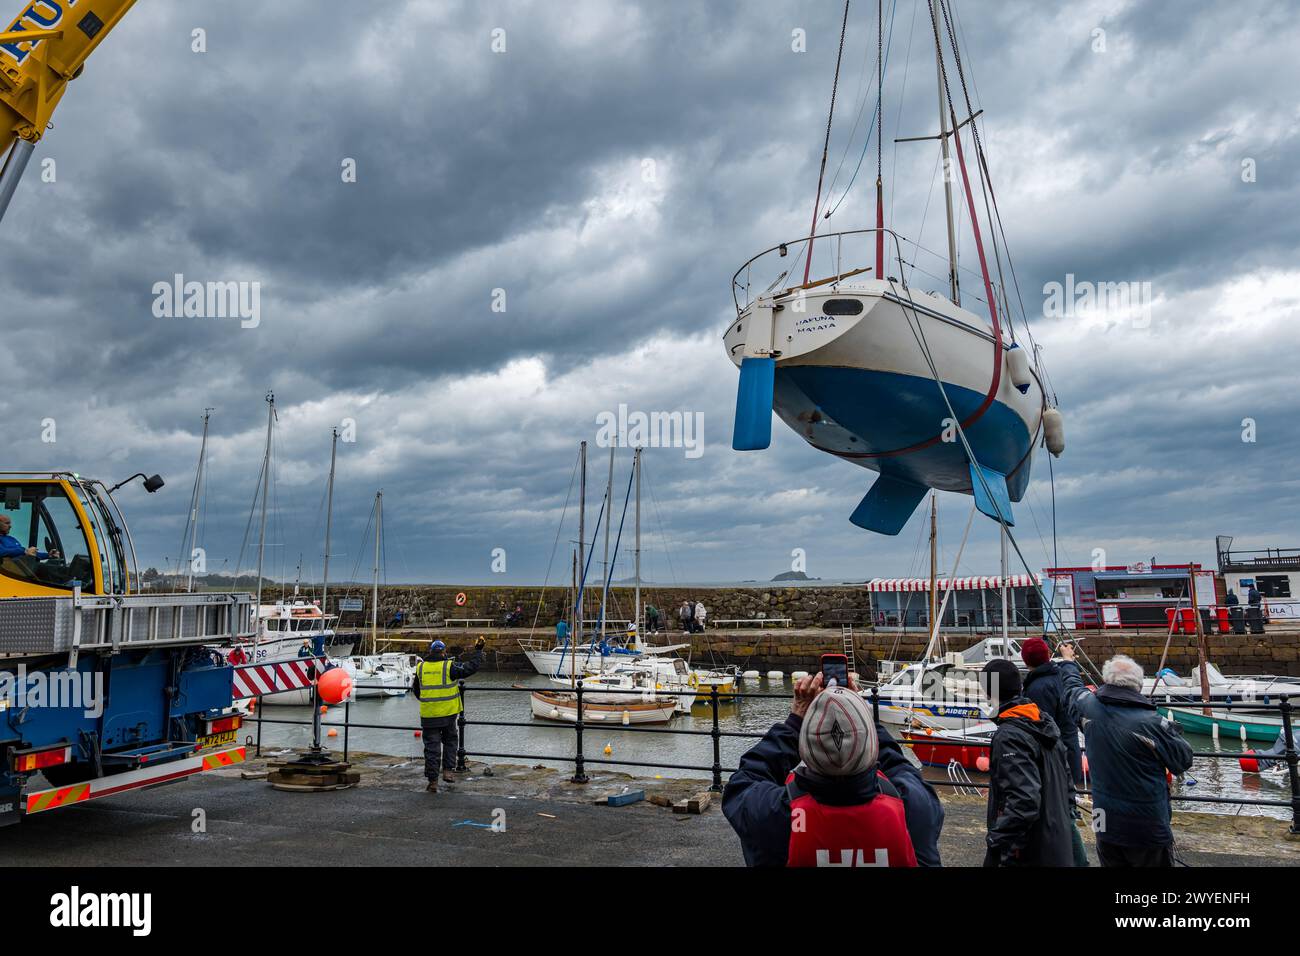 Port de North Berwick, East Lothian, Écosse, Royaume-Uni, 6 avril 2024. Yachts dans l'eau : l'événement annuel d'organisation d'une grue pour soulever plus de 20 voiliers dans l'eau pour la saison estivale a lieu aujourd'hui. Crédit : Sally Anderson/Alamy Live News Banque D'Images